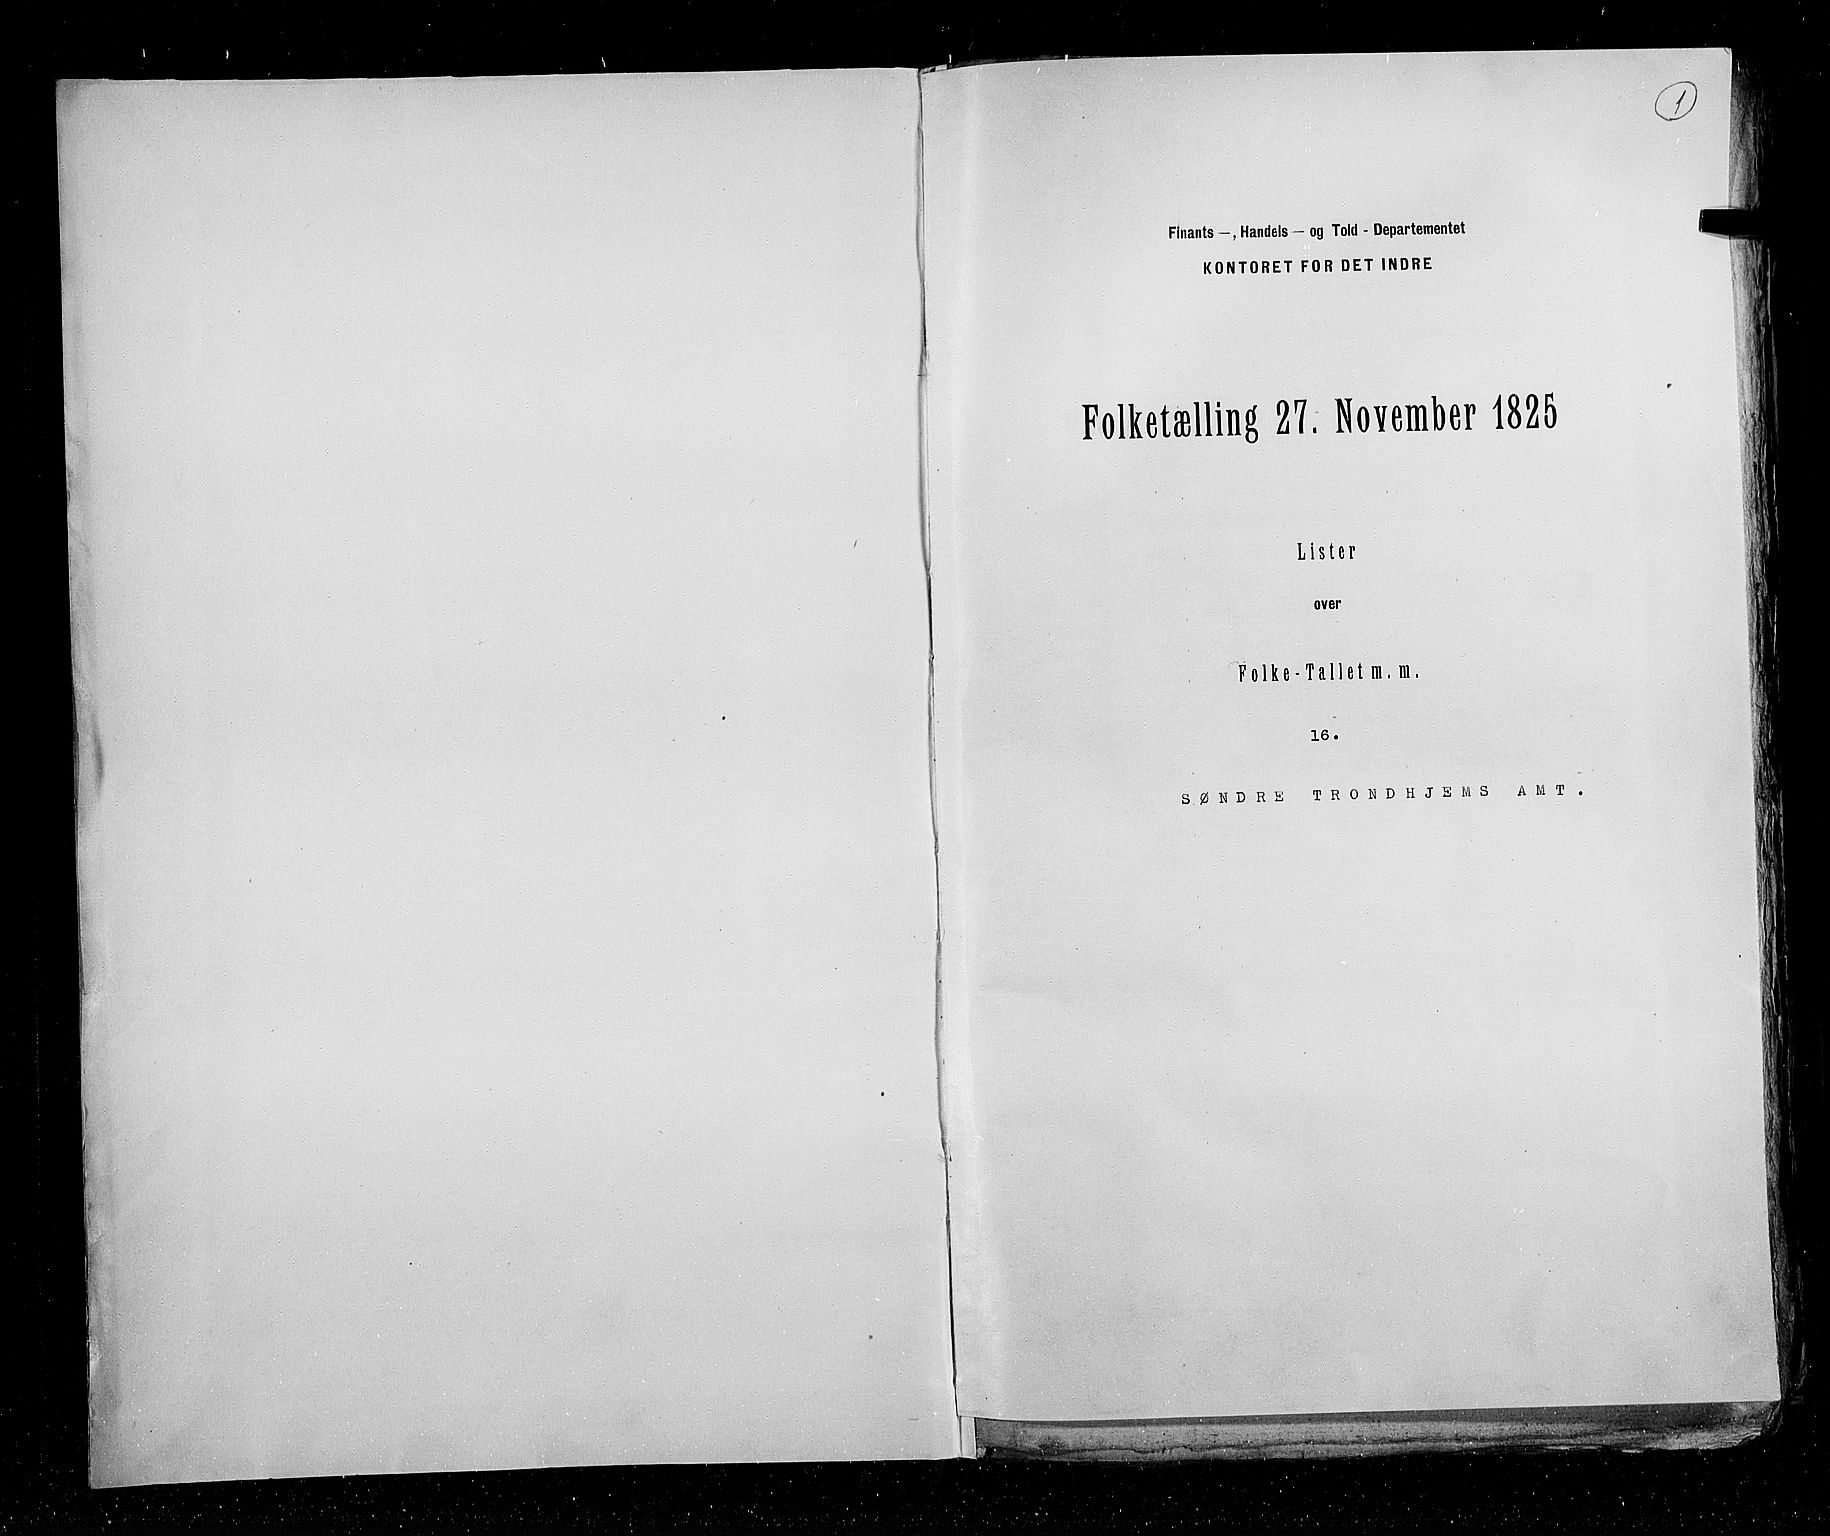 RA, Folketellingen 1825, bind 16: Søndre Trondhjem amt, 1825, s. 1